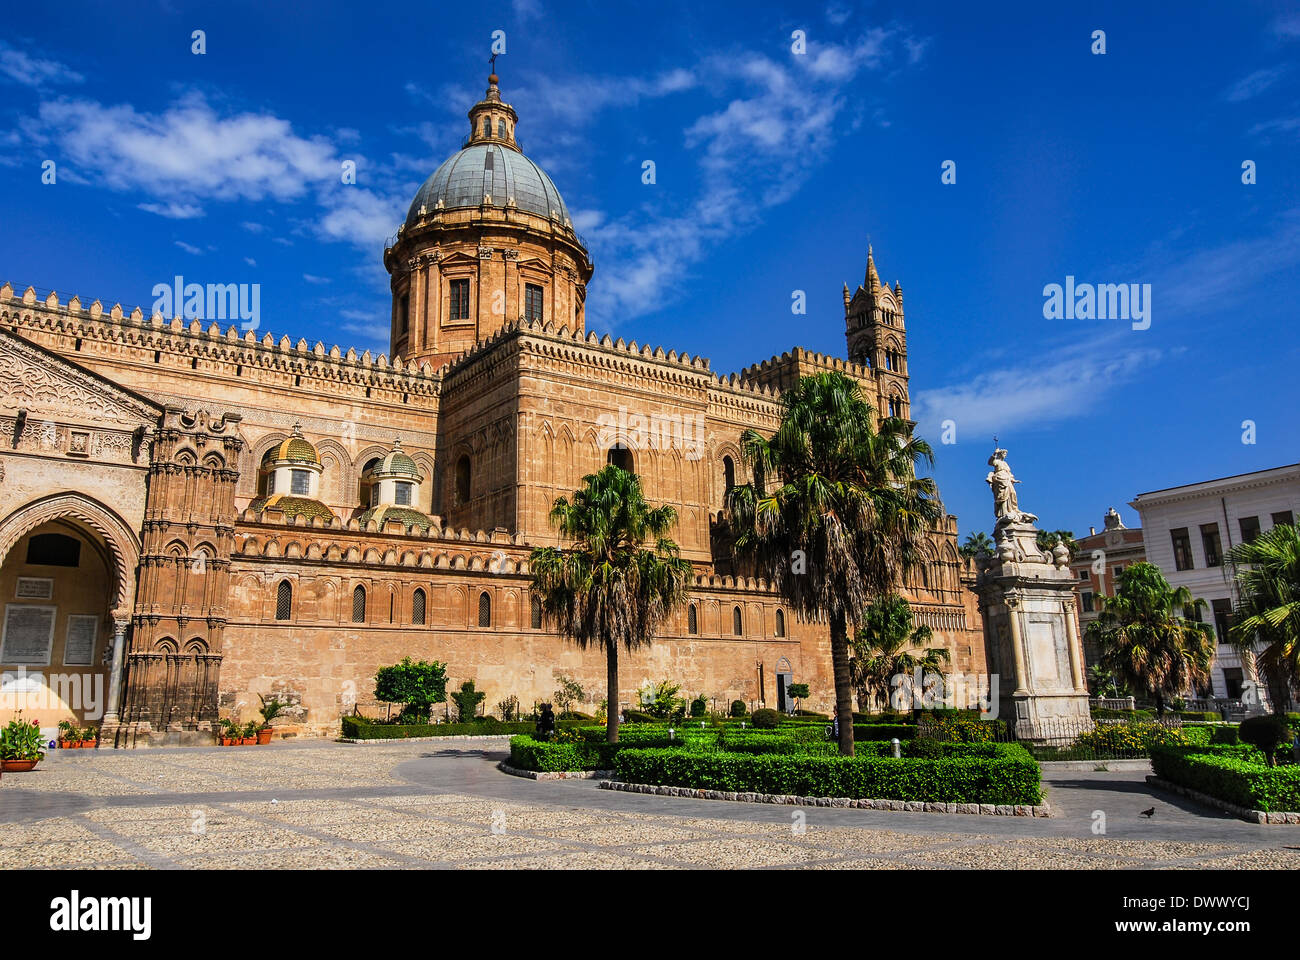 Palermo, Sizilien. Kathedrale wurde 1179 in Norman Struktur erbaut. Kathedrale Santa Maria Assunta, Wahrzeichen von Italien. Stockfoto